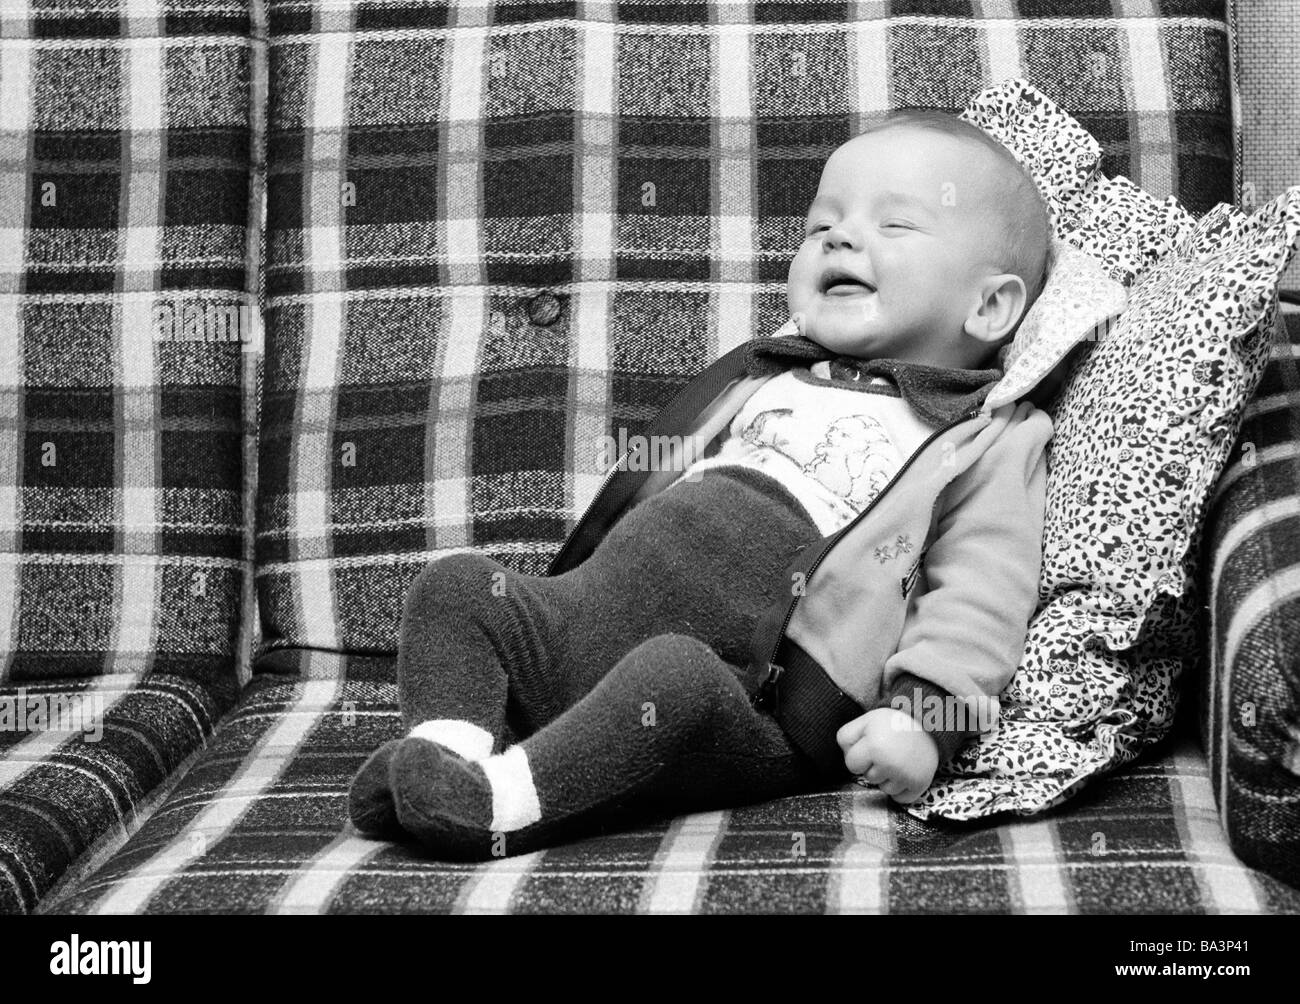 70er Jahre, schwarz / weiß Foto, Menschen, Kinder, Baby liegt auf einer Couch, lachen, im Alter von 6 bis 12 Monaten, im Alter von 1 Jahr, Andreas Stockfoto